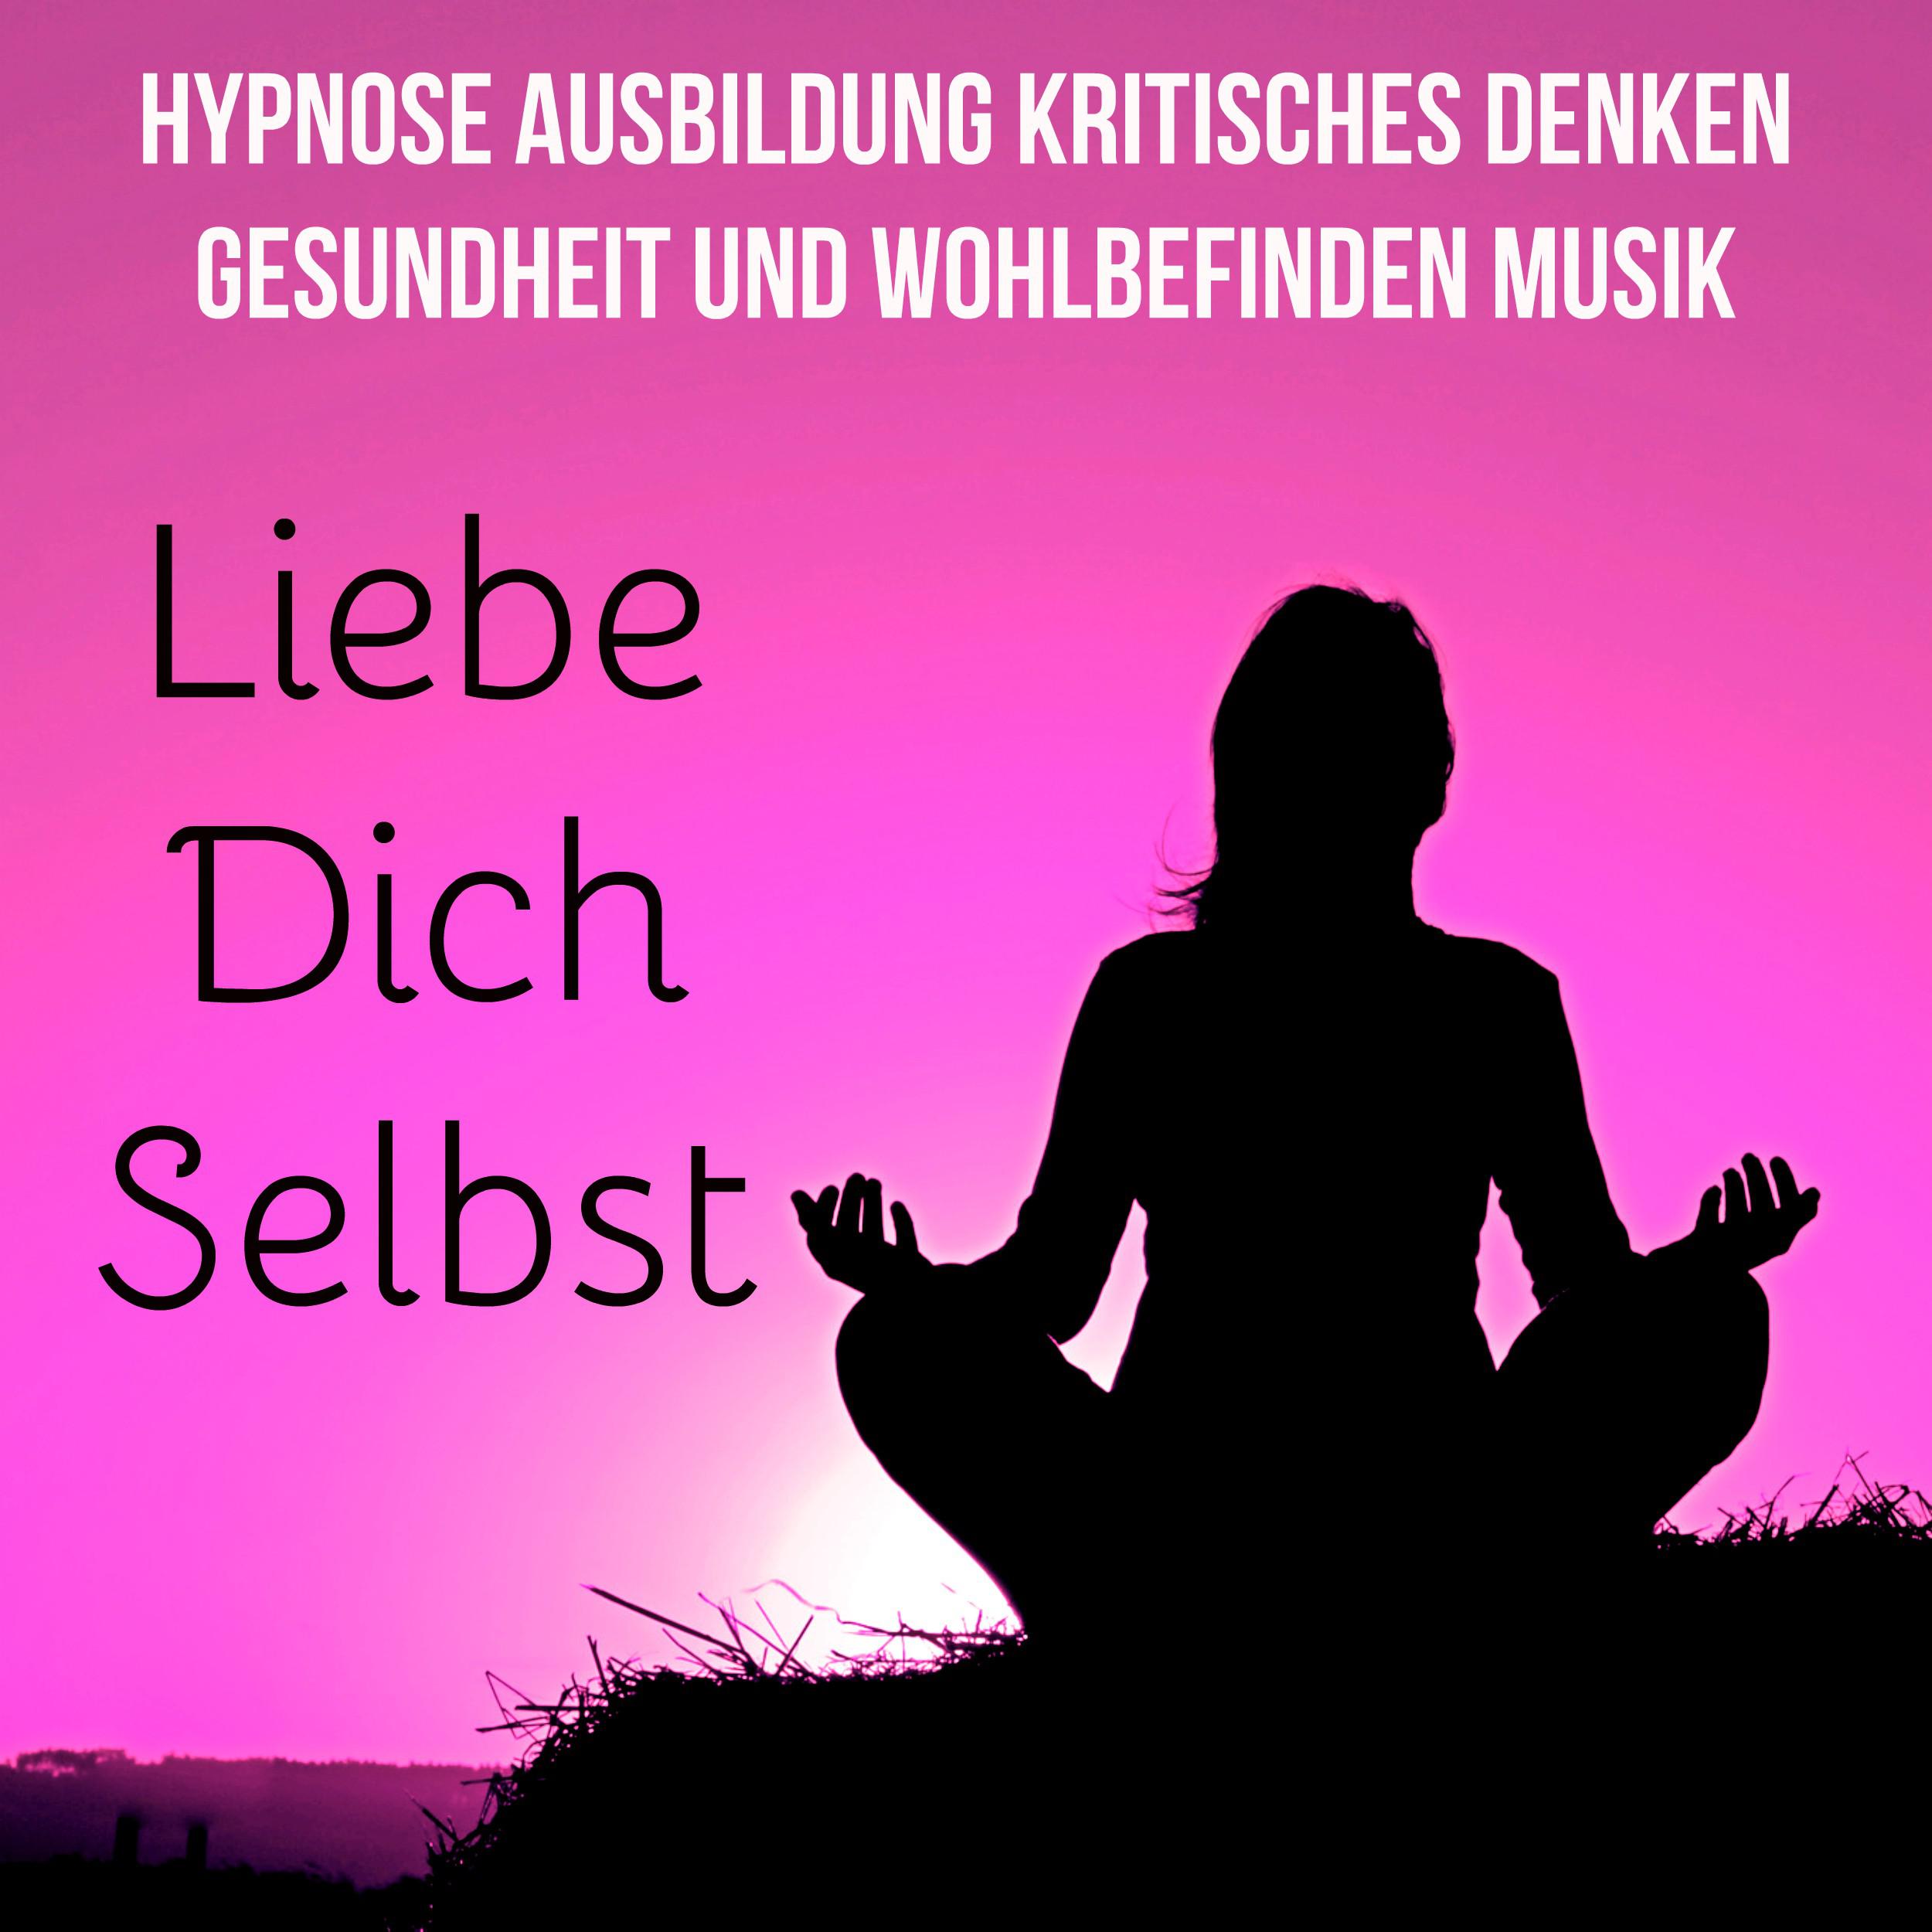 Liebe Dich Selbst - Hypnose Ausbildung Kritisches Denken Gesundheit und Wohlbefinden Musik mit Natur New Age Geräusche